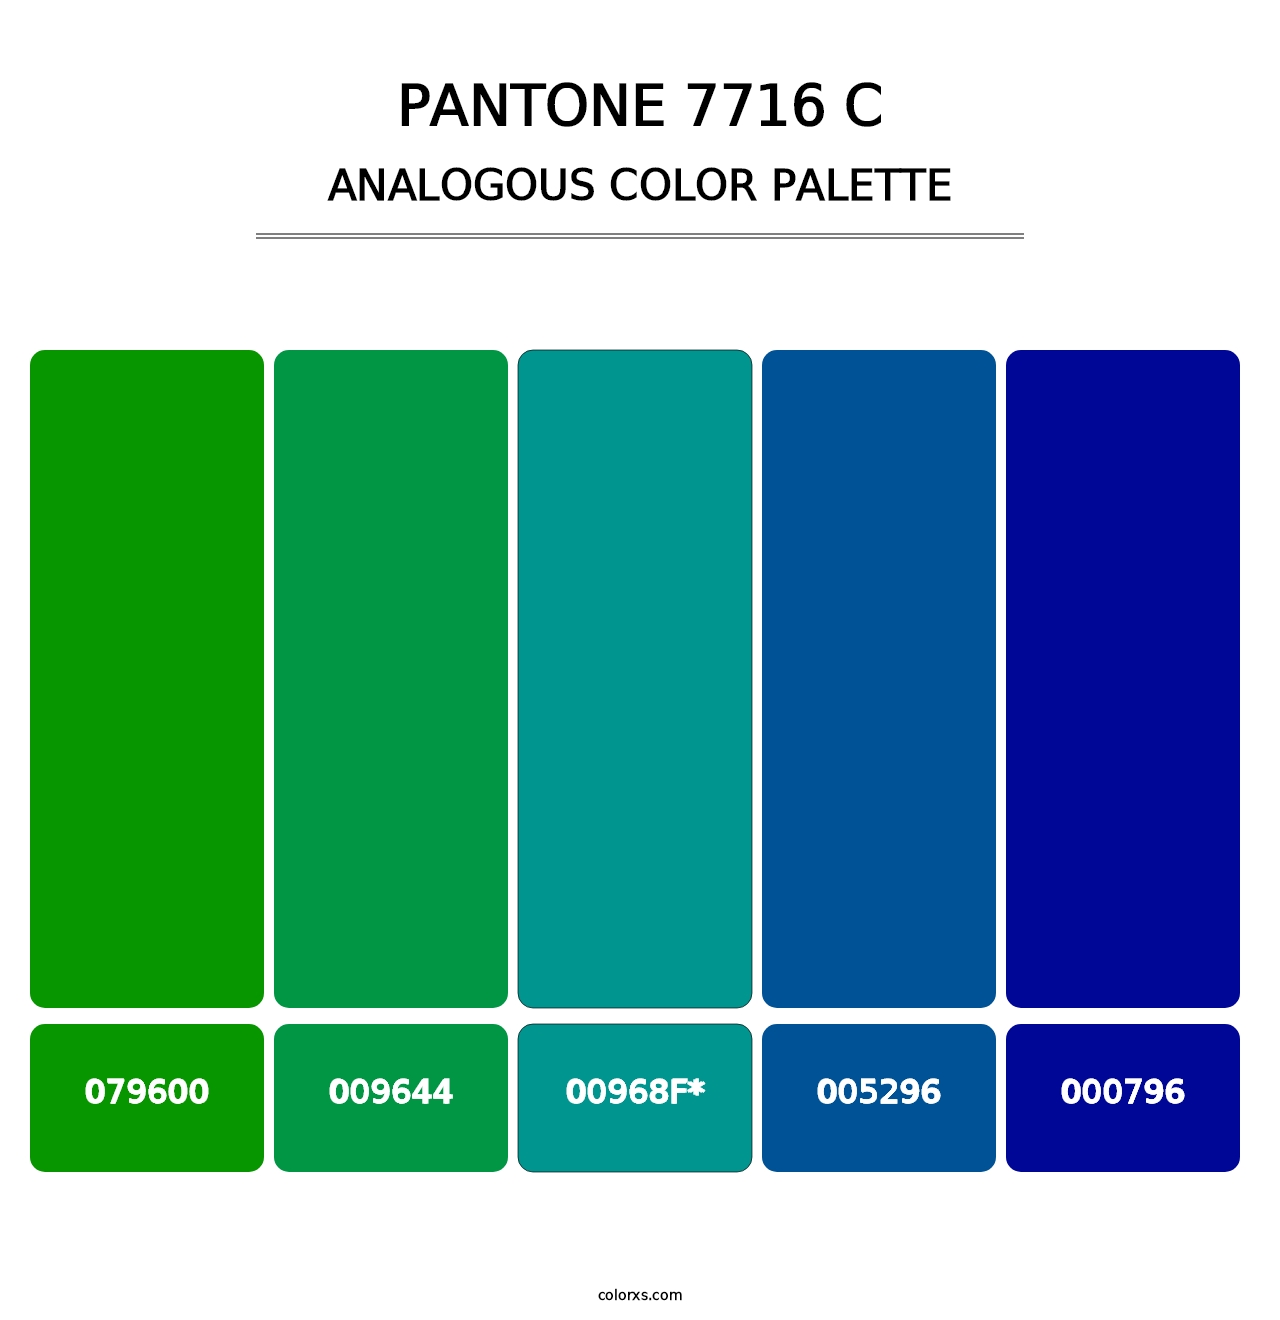 PANTONE 7716 C - Analogous Color Palette